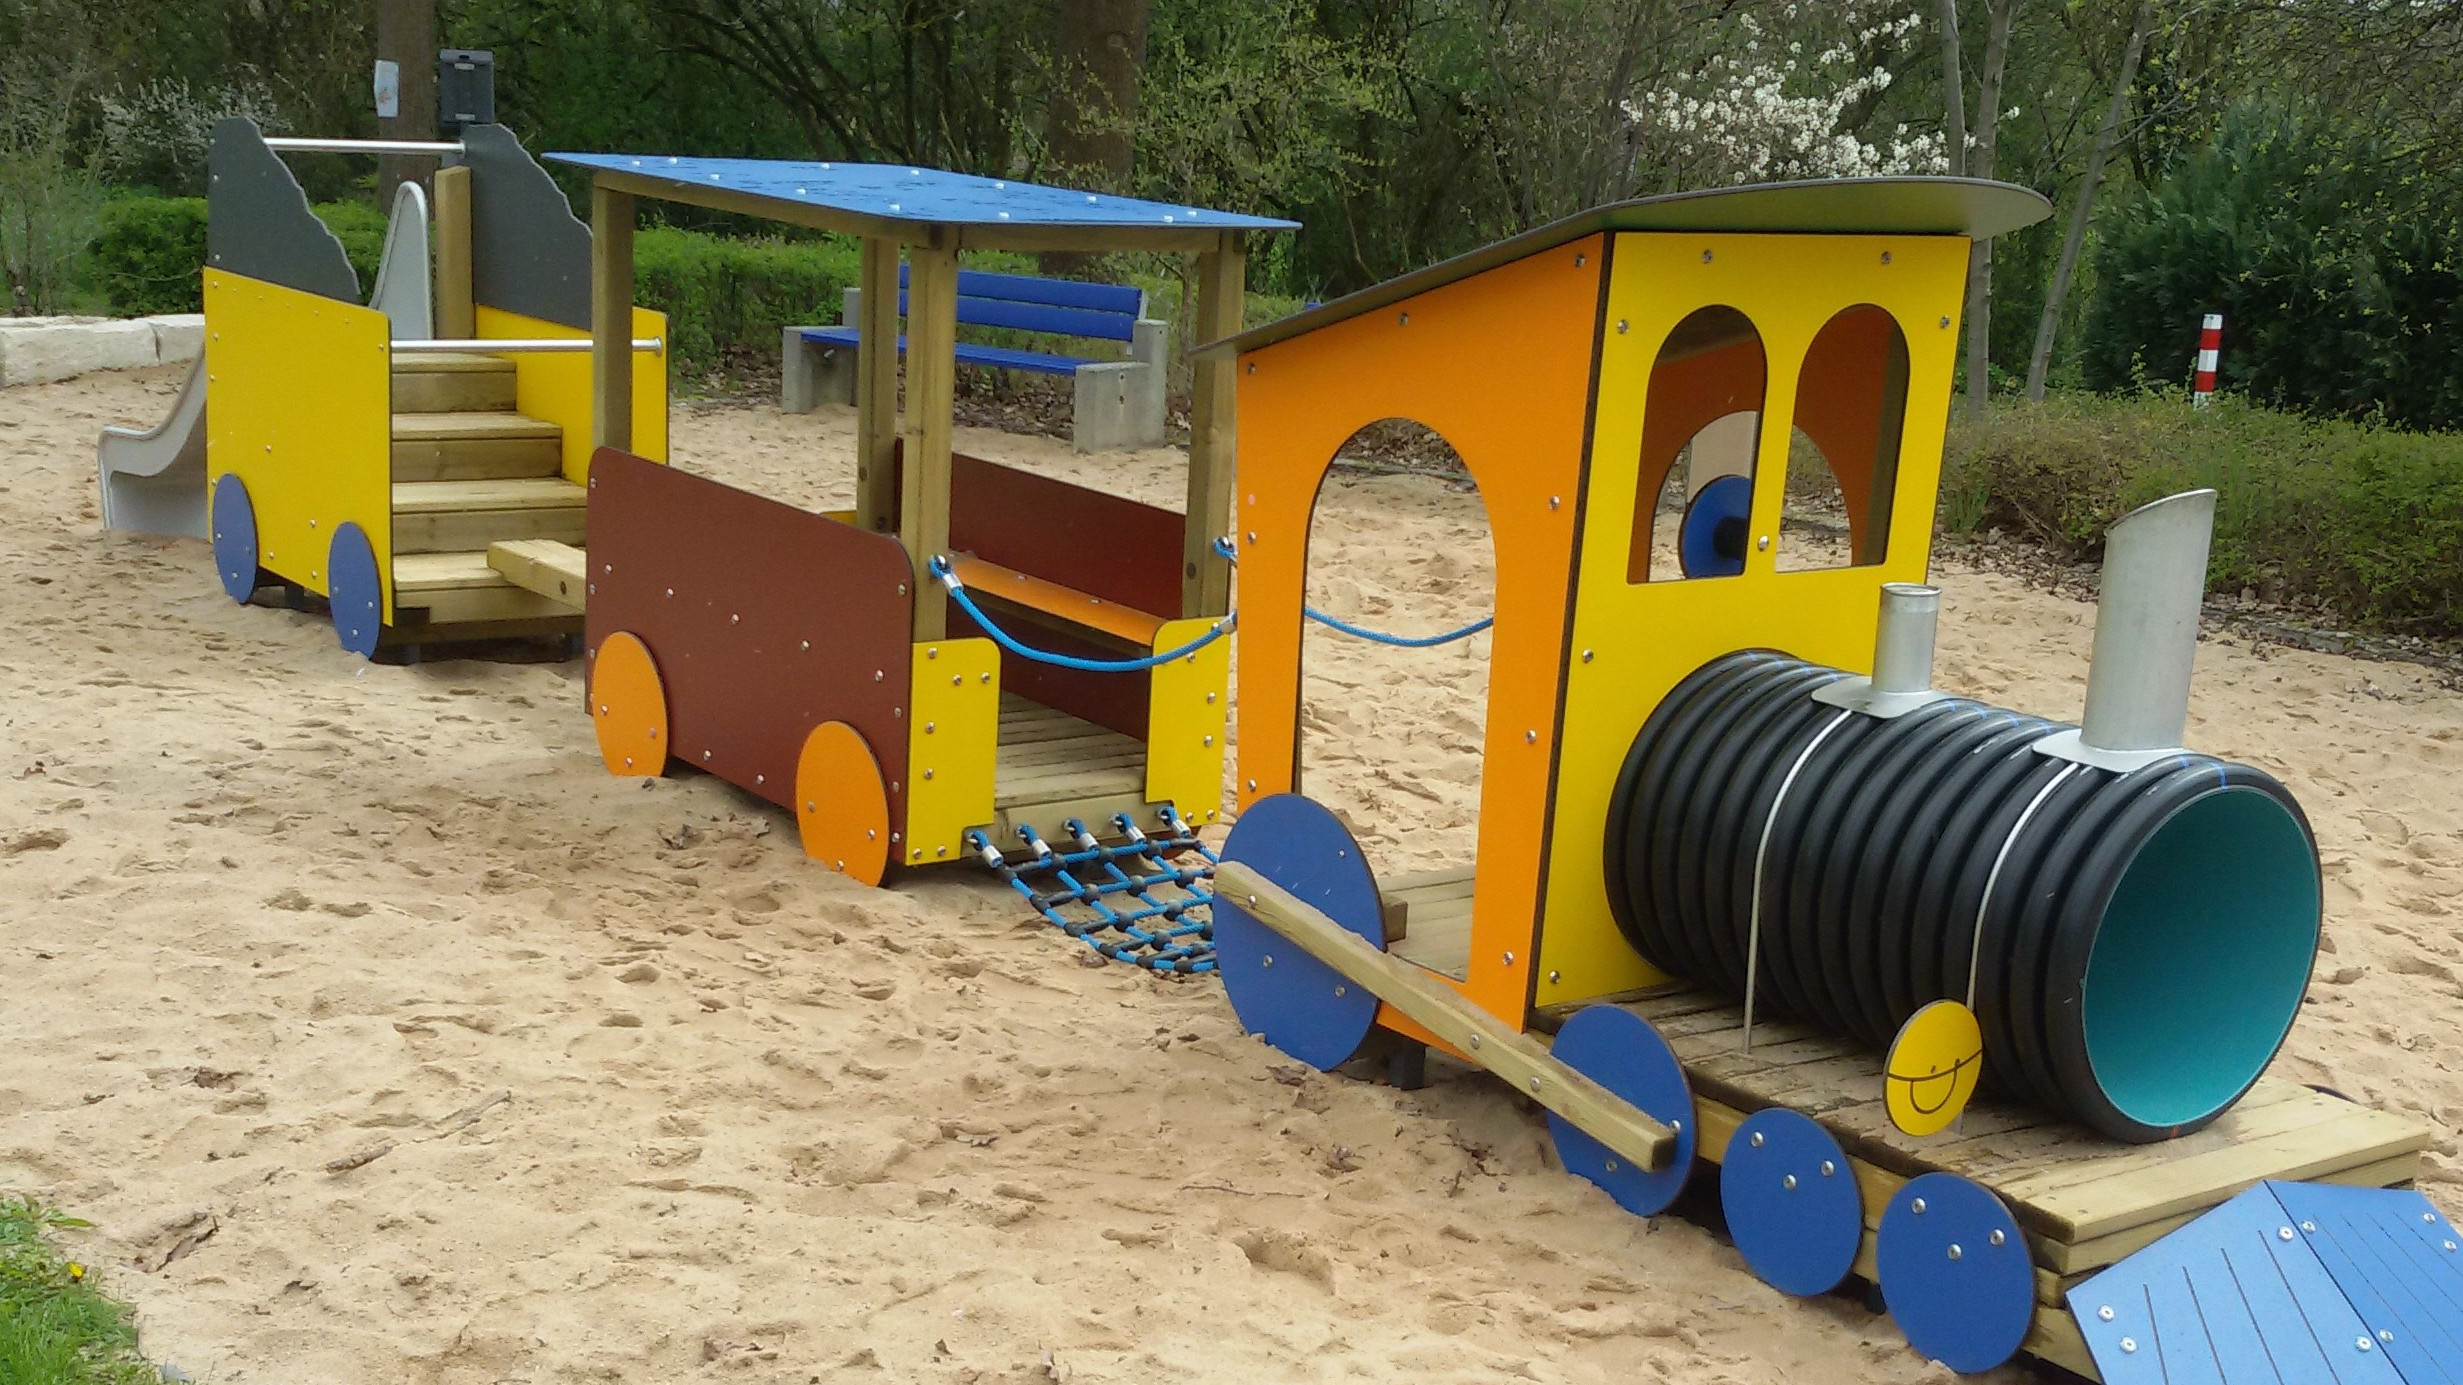  Ein großes Spielgerät in Form eines Zuges steht in einem großen Sandkasten. 